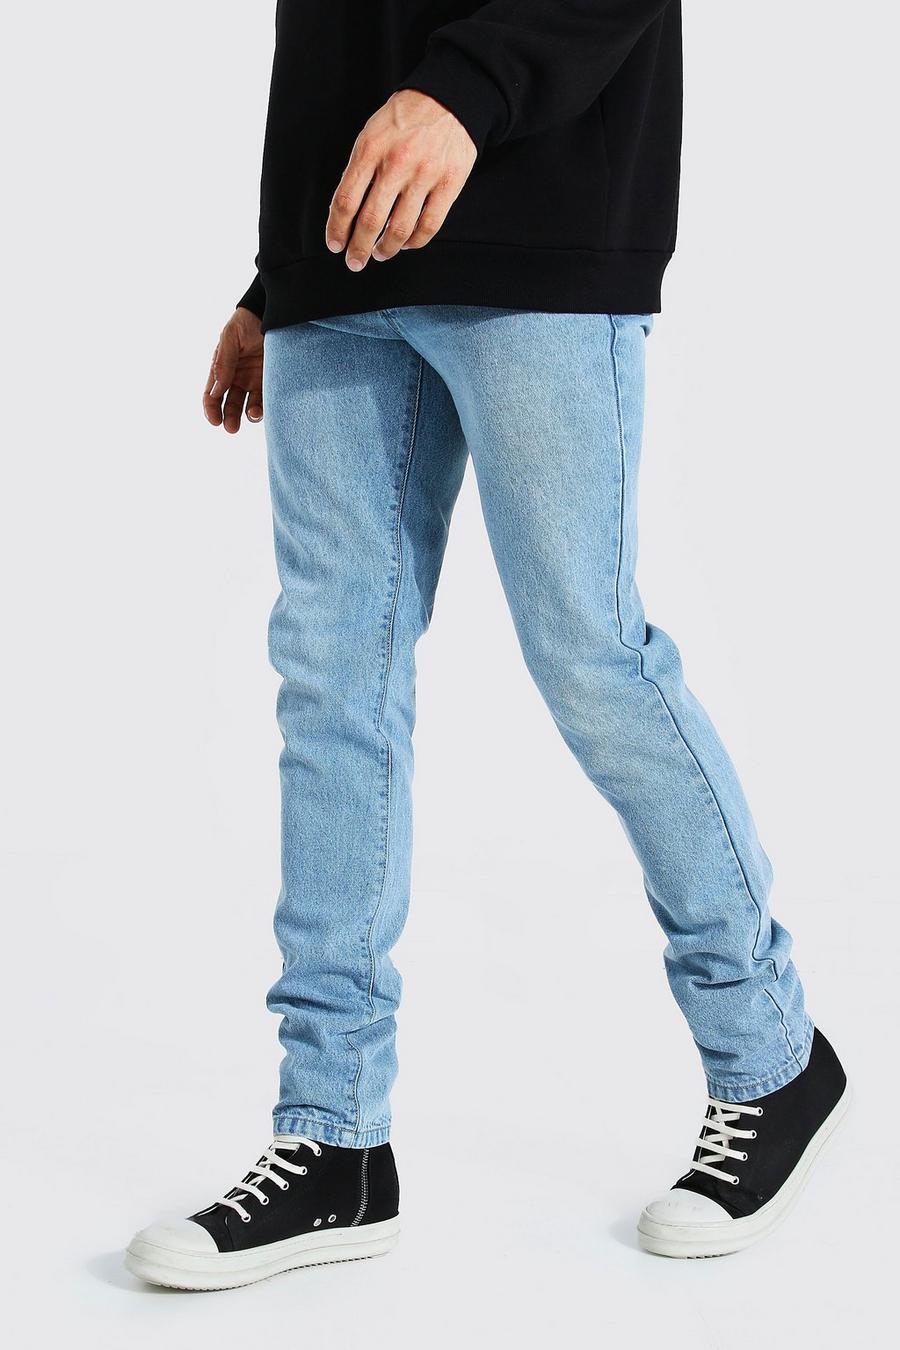 כחול בהיר ג'ינס צר מבד קשיח לגברים גבוהים image number 1